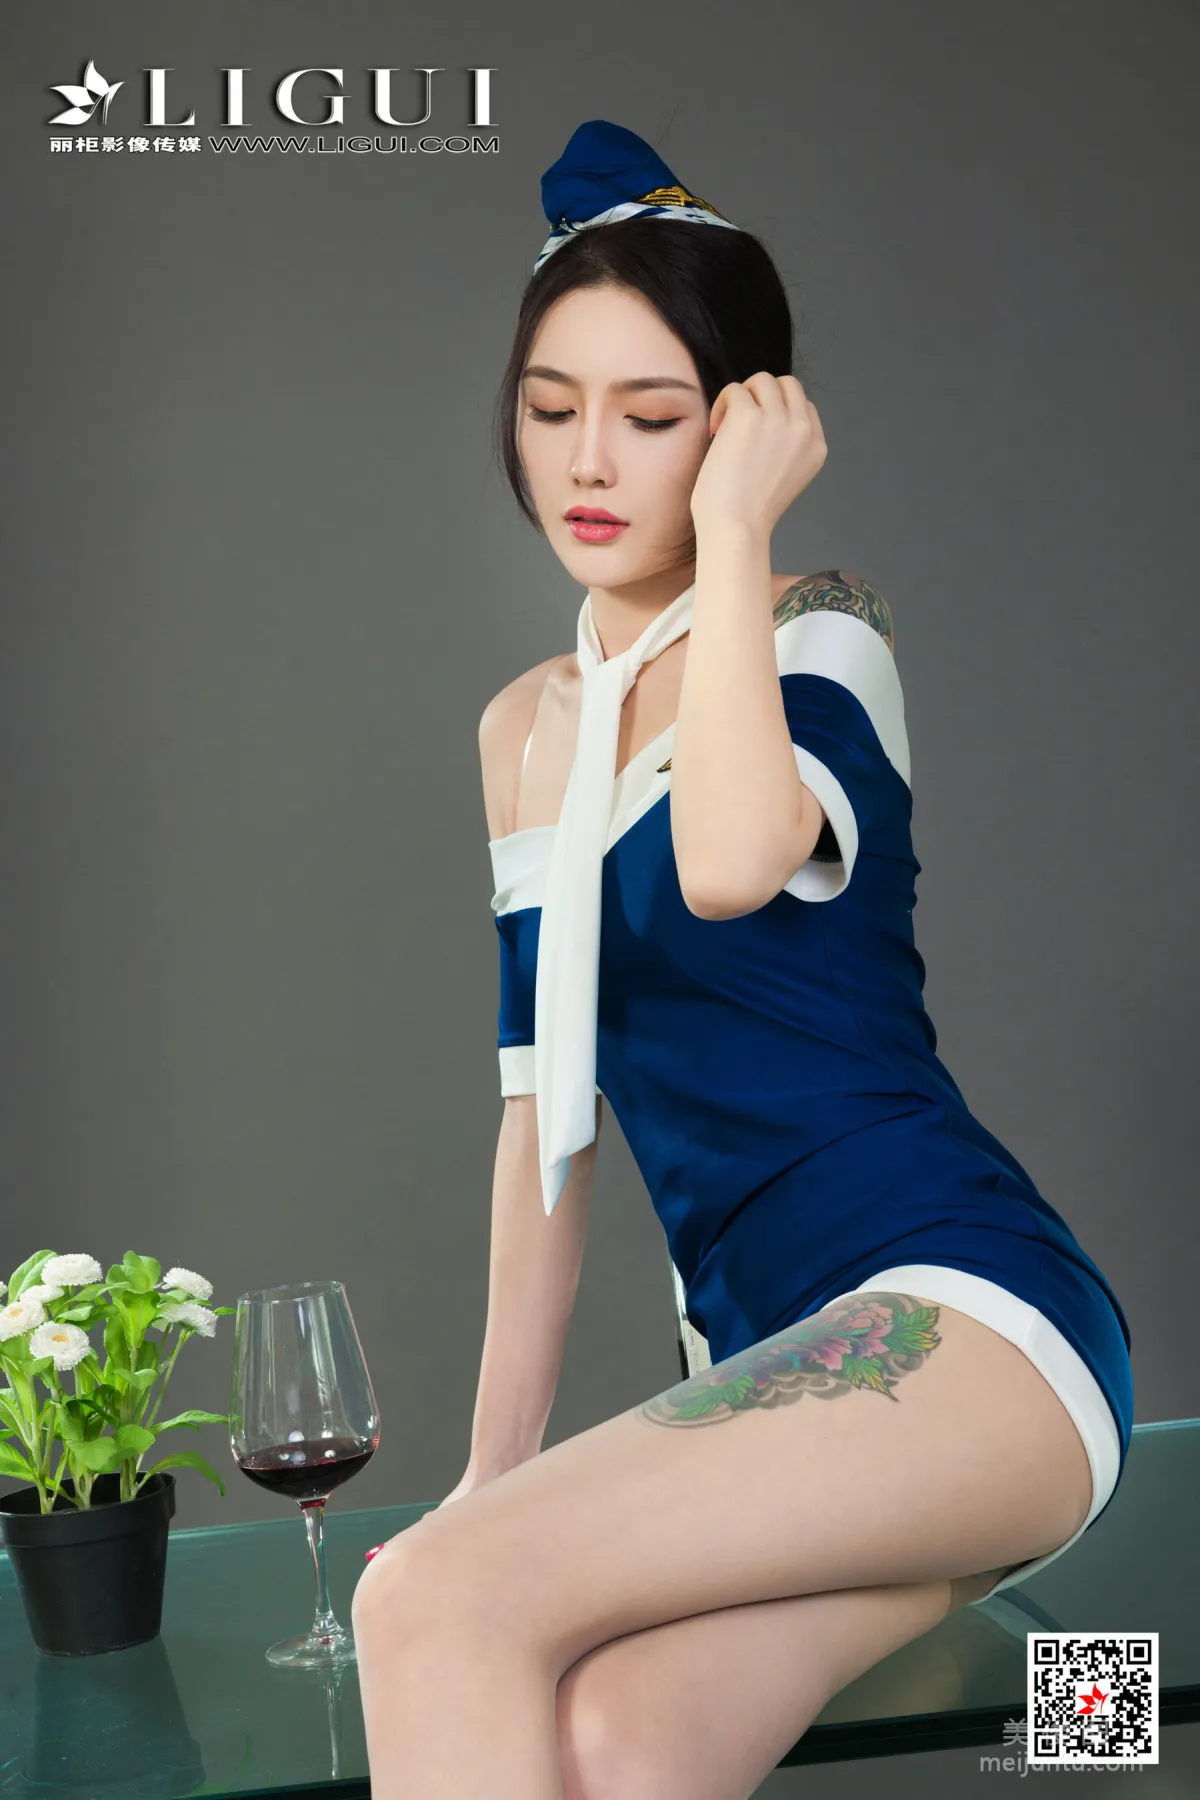 [丽柜Ligui] Model 甜甜 《醉酒香莲》6